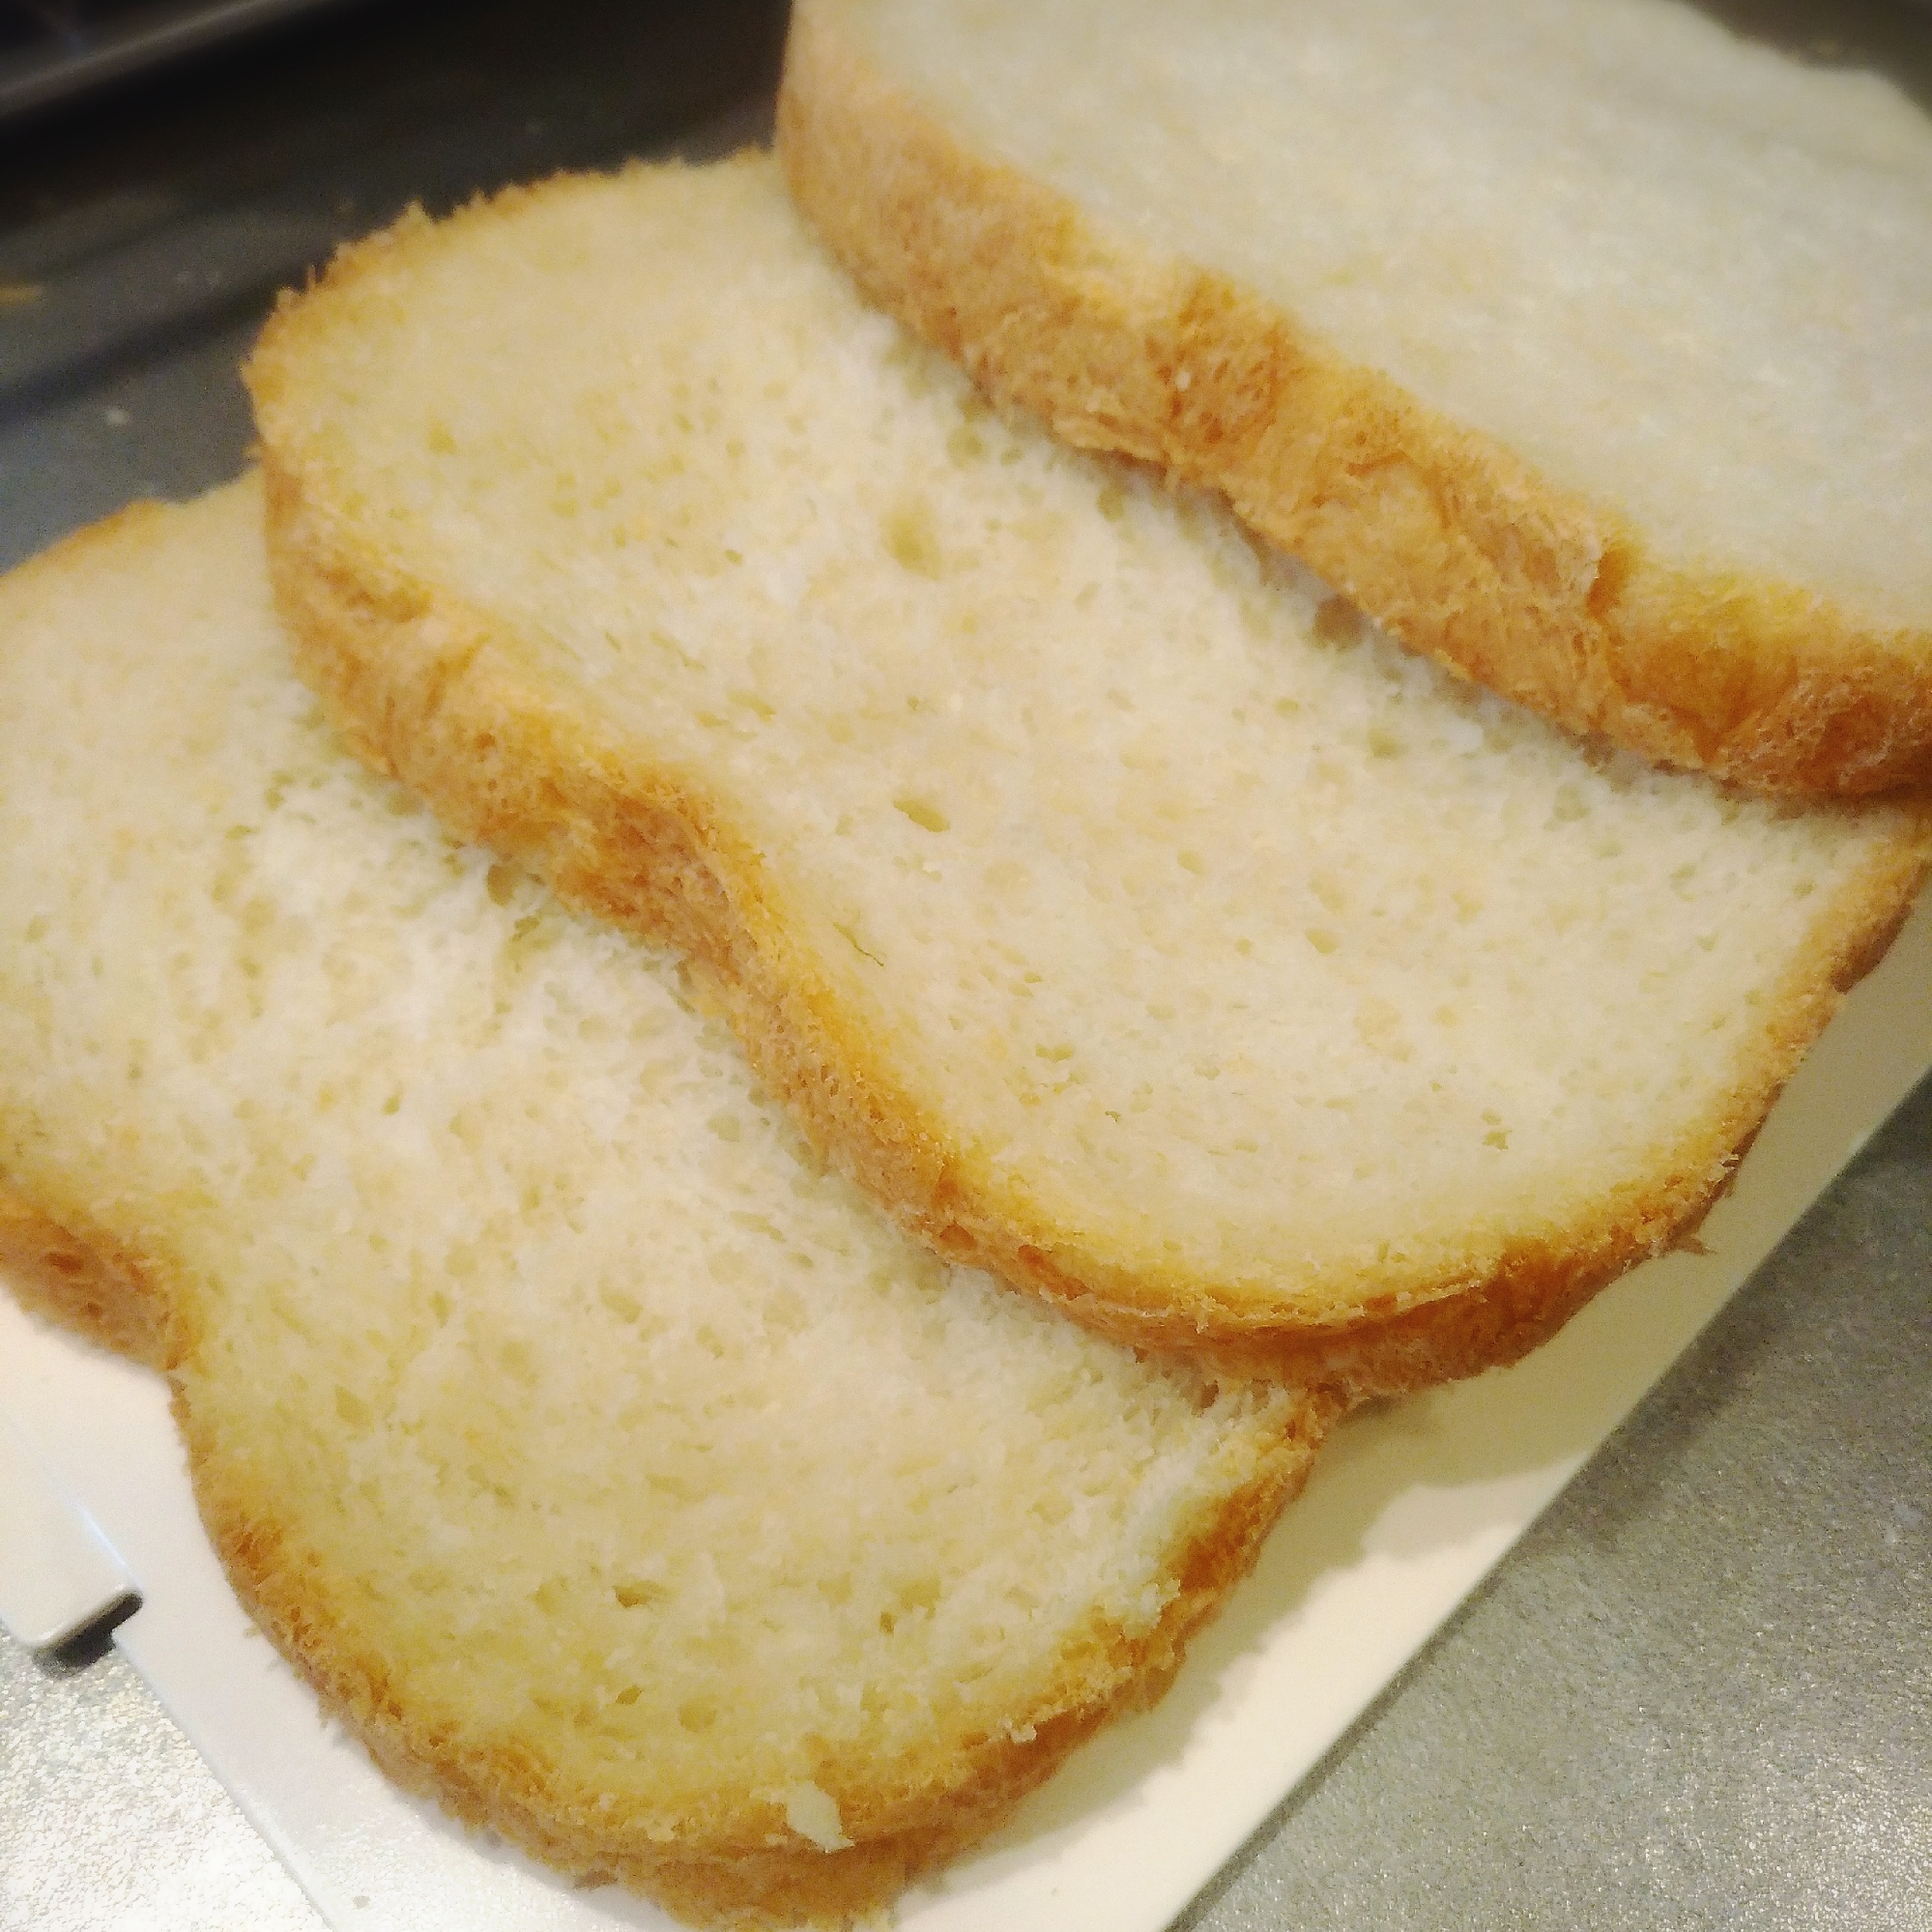 ちょっぴり減塩★ホームベーカリーで焼く食パン